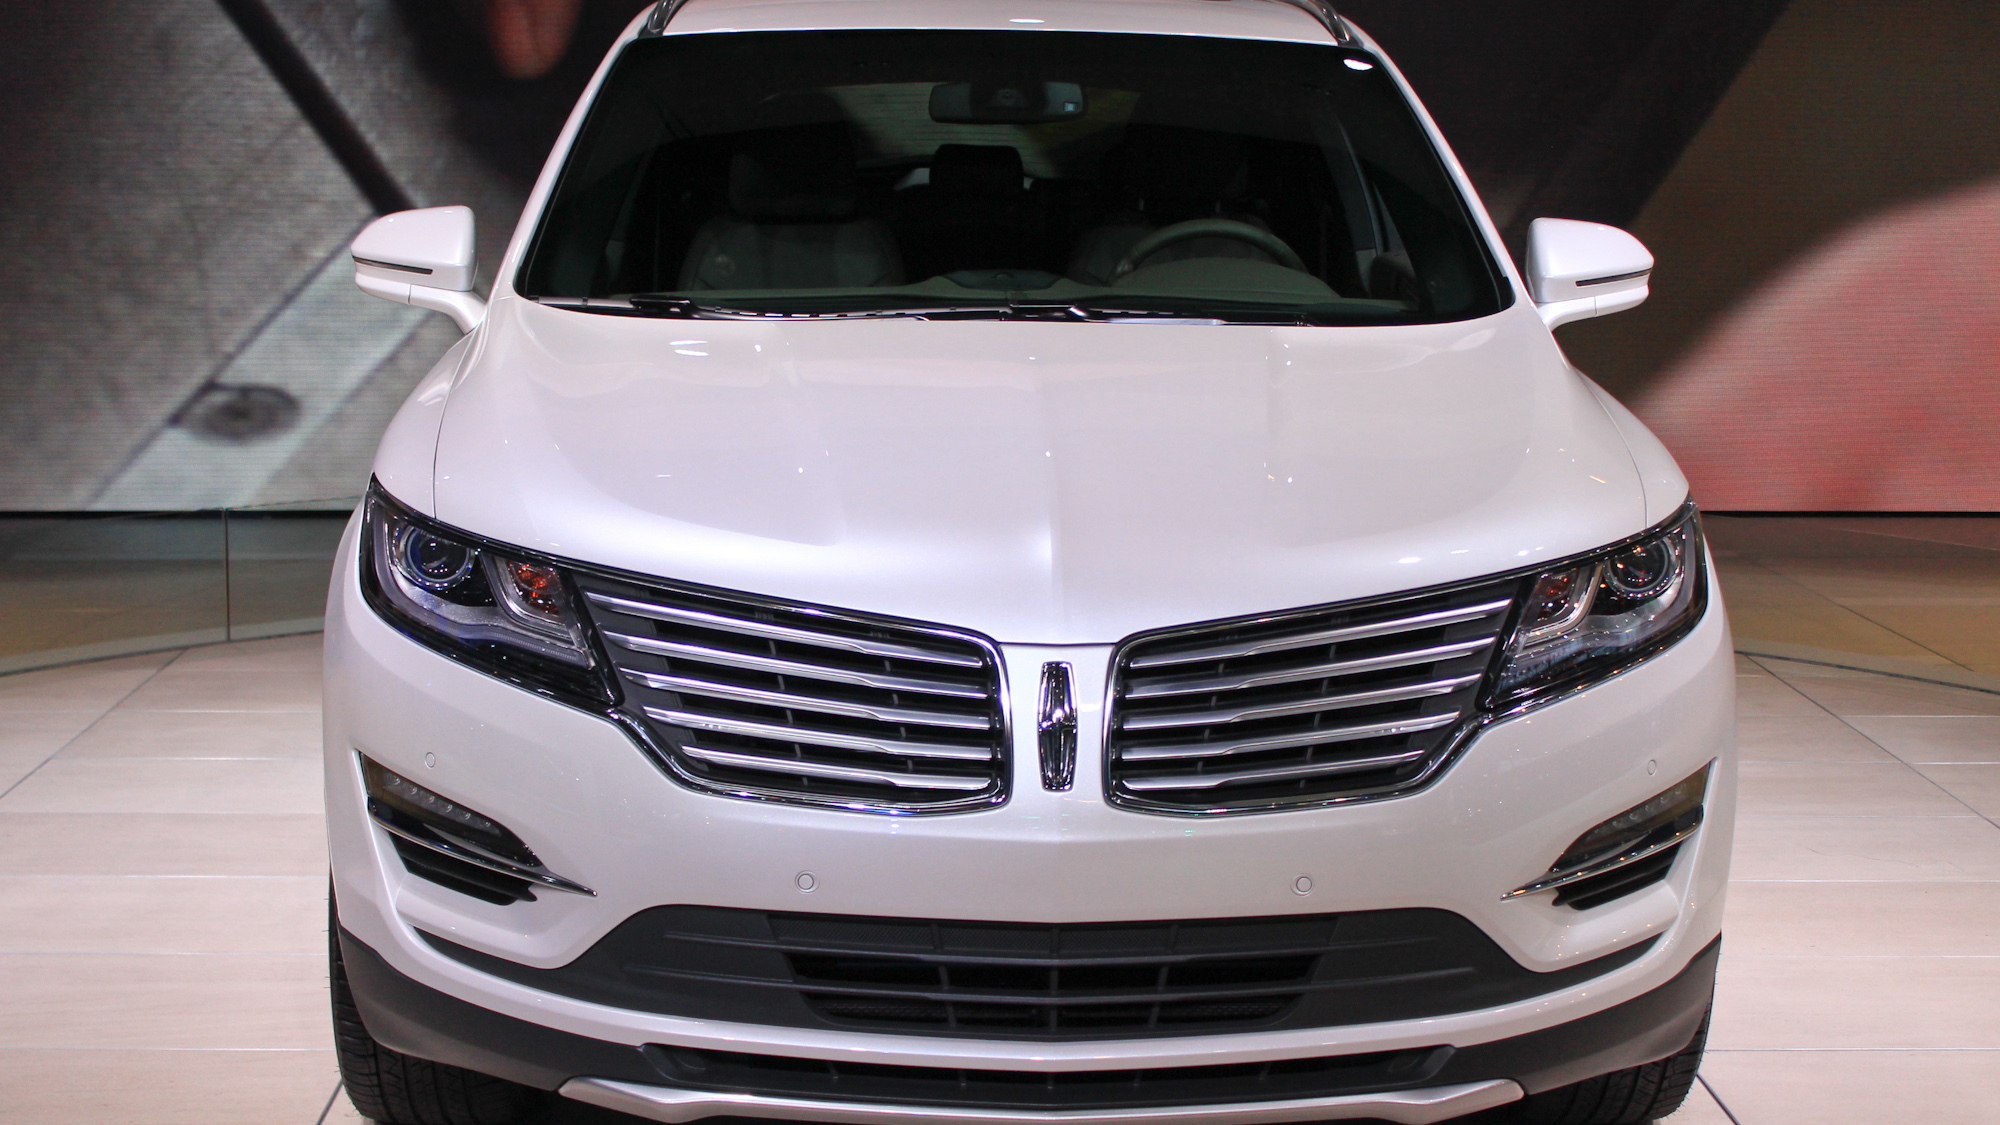 2015 Lincoln MKC, 2013 Los Angeles Auto Show